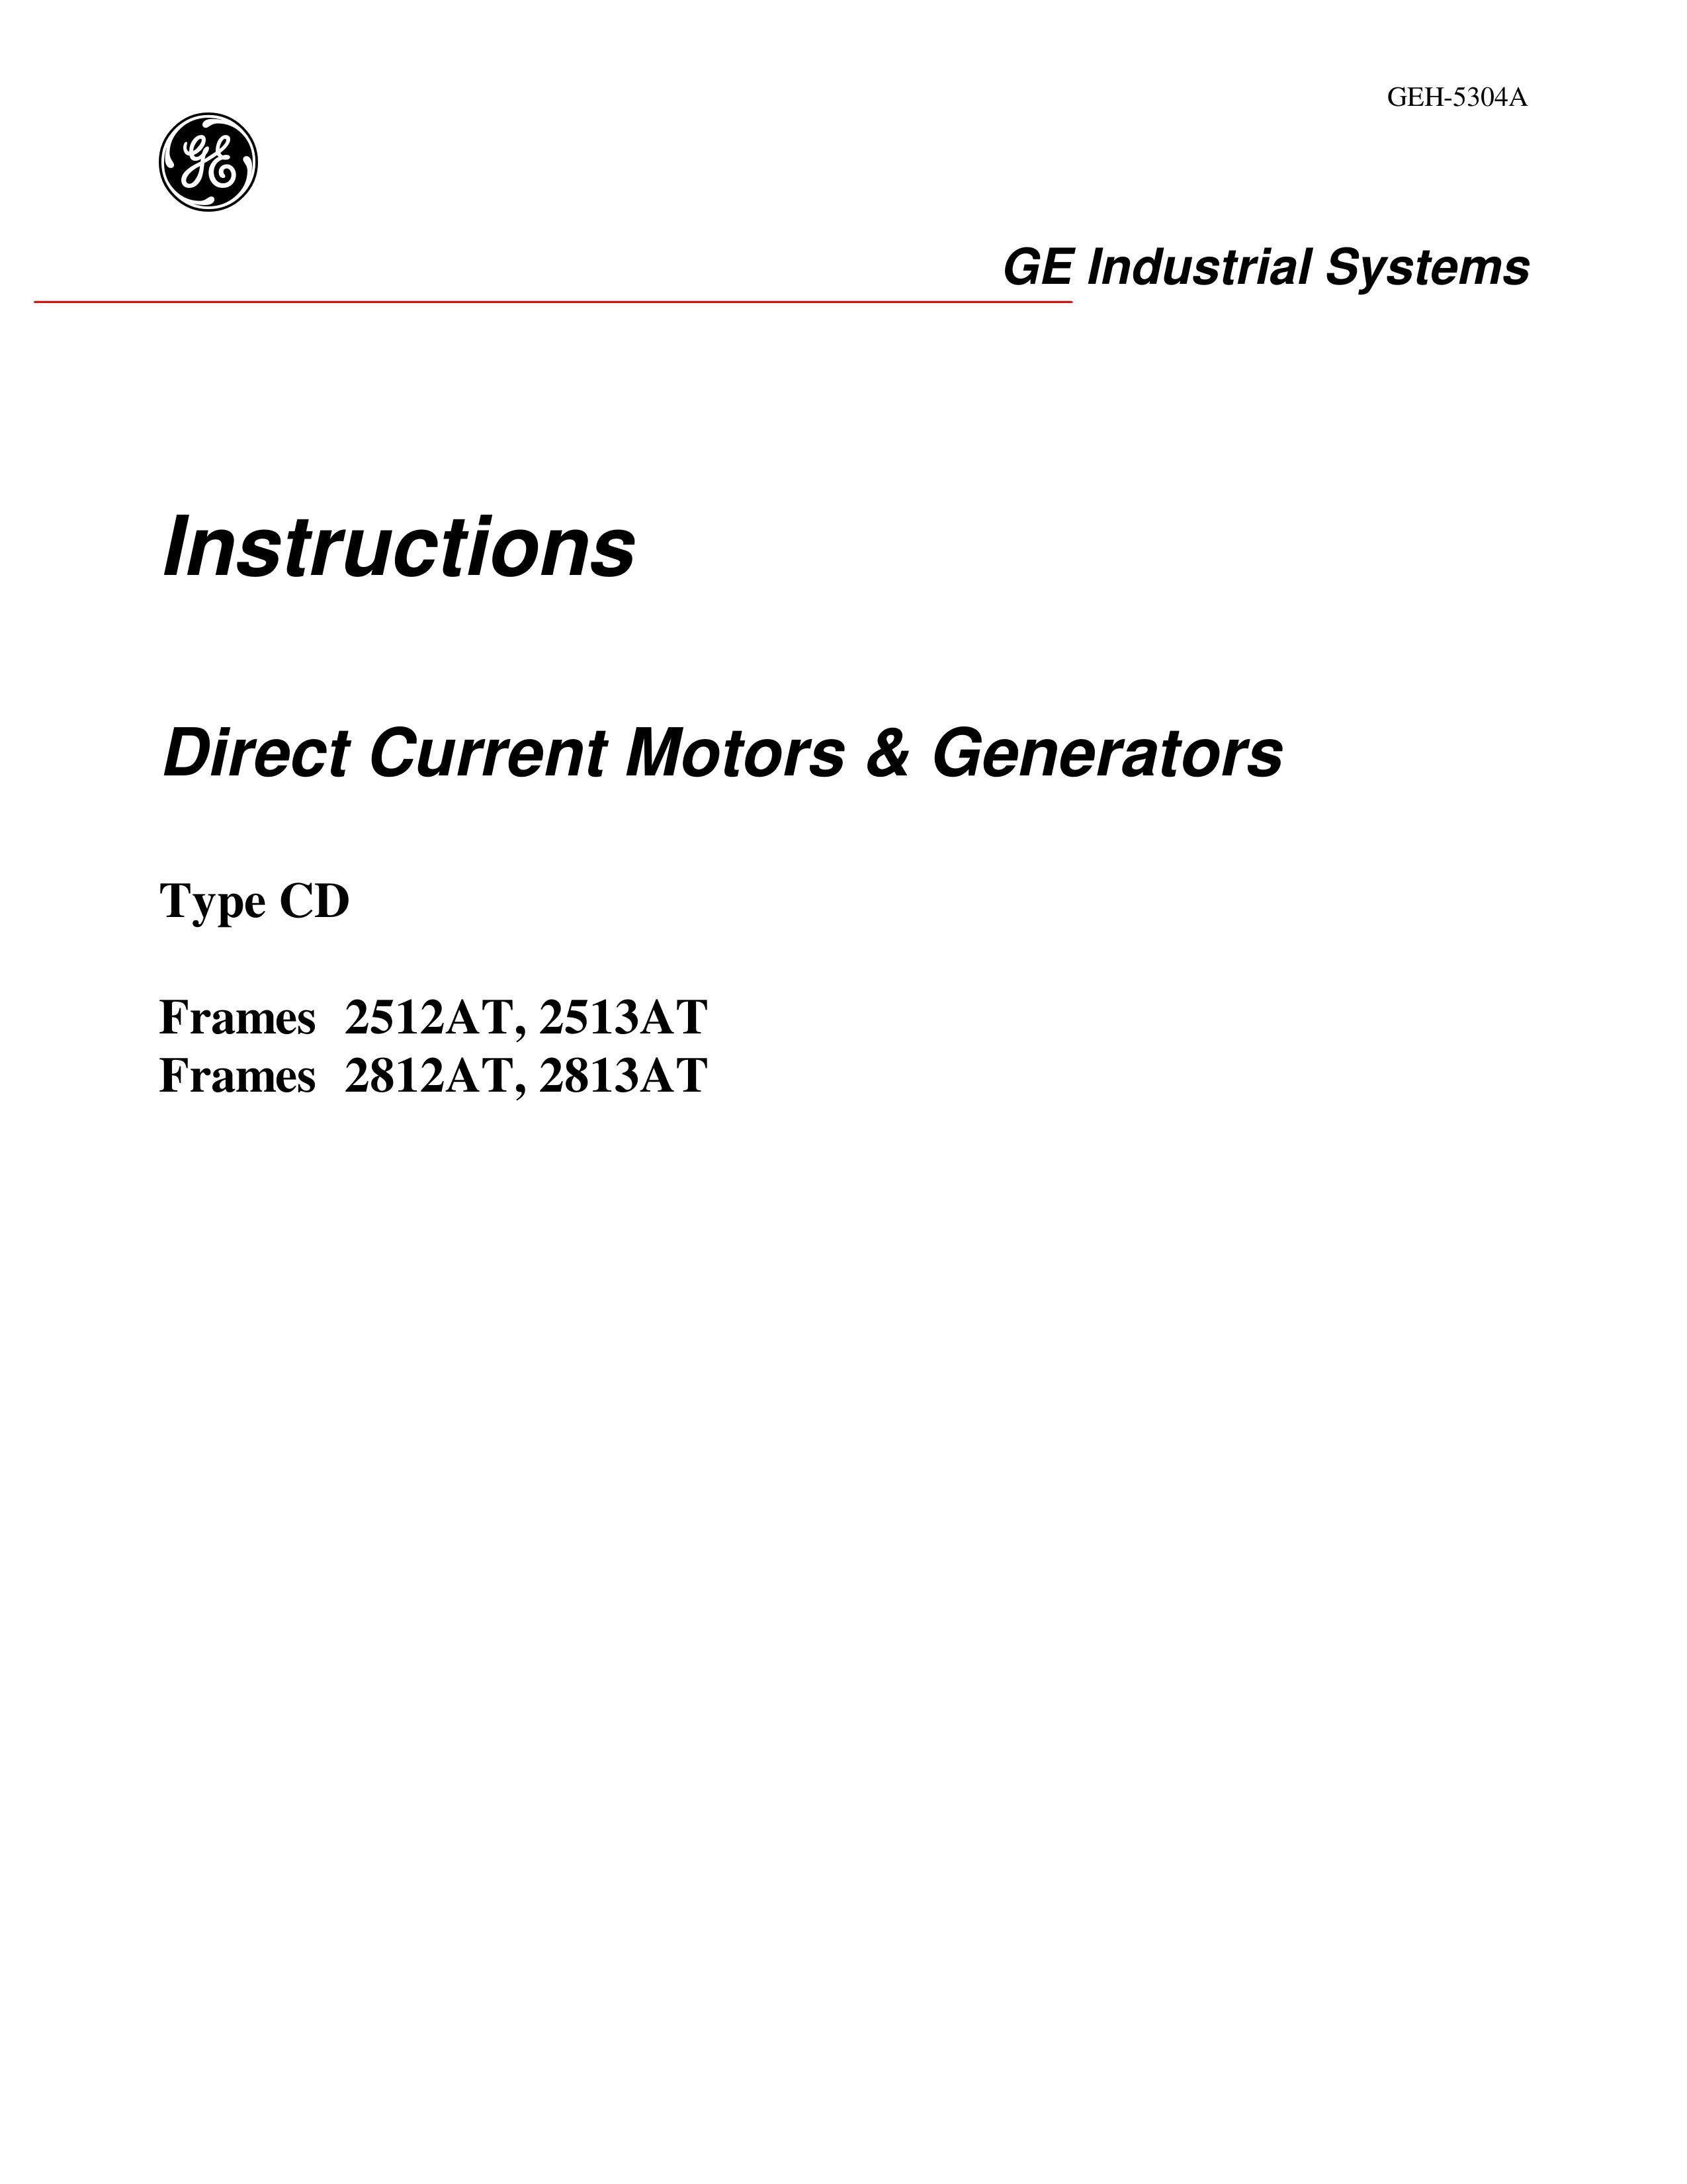 GE GEH-5304A Portable Generator User Manual